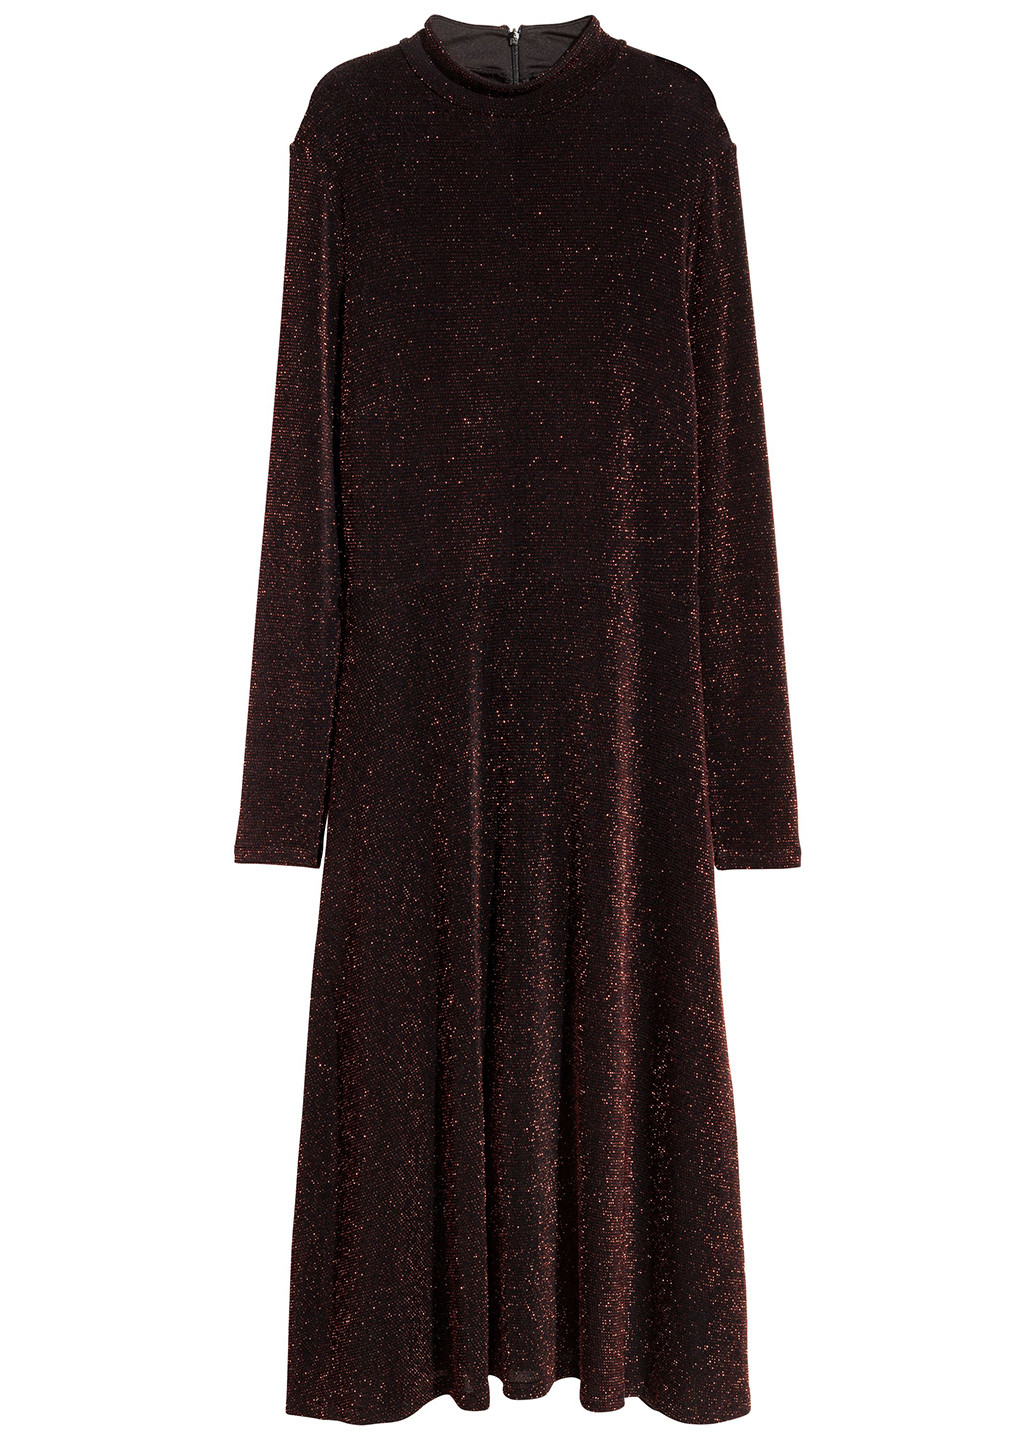 Темно-фиолетовое вечернее платье платье-водолазка H&M с узором «перец с солью»